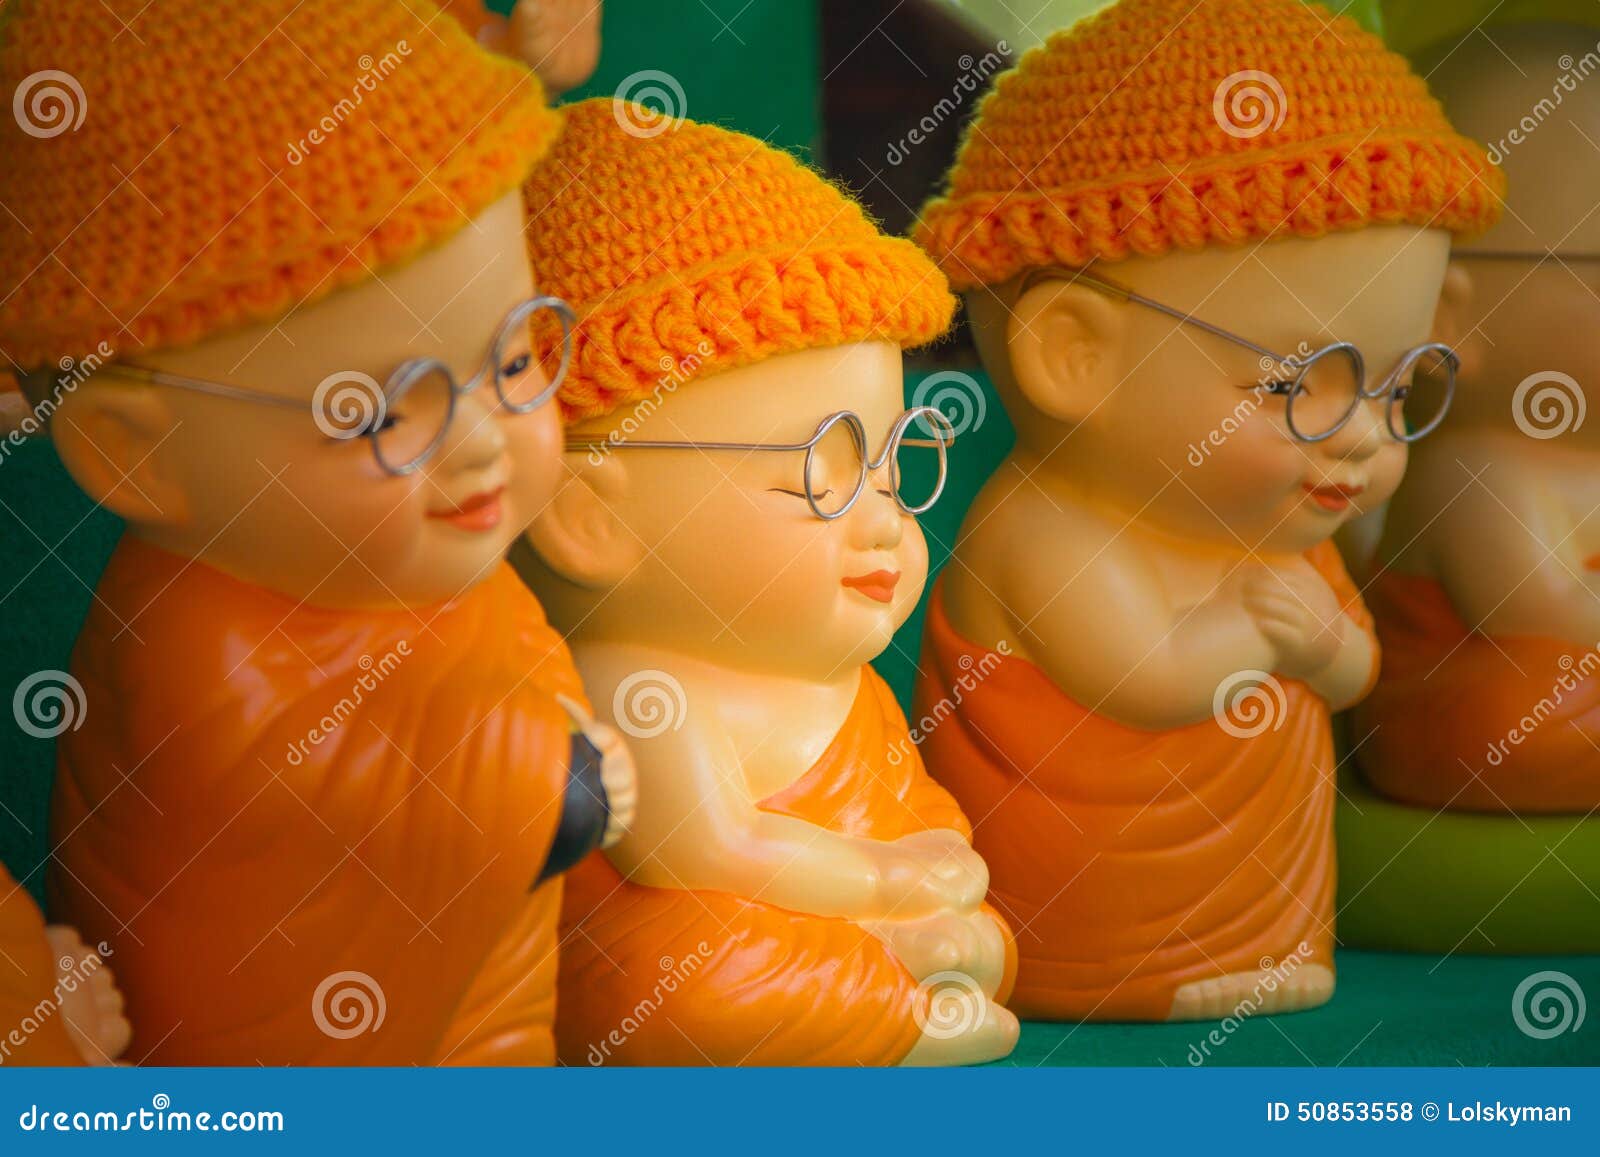 monk doll meditating to luminosity